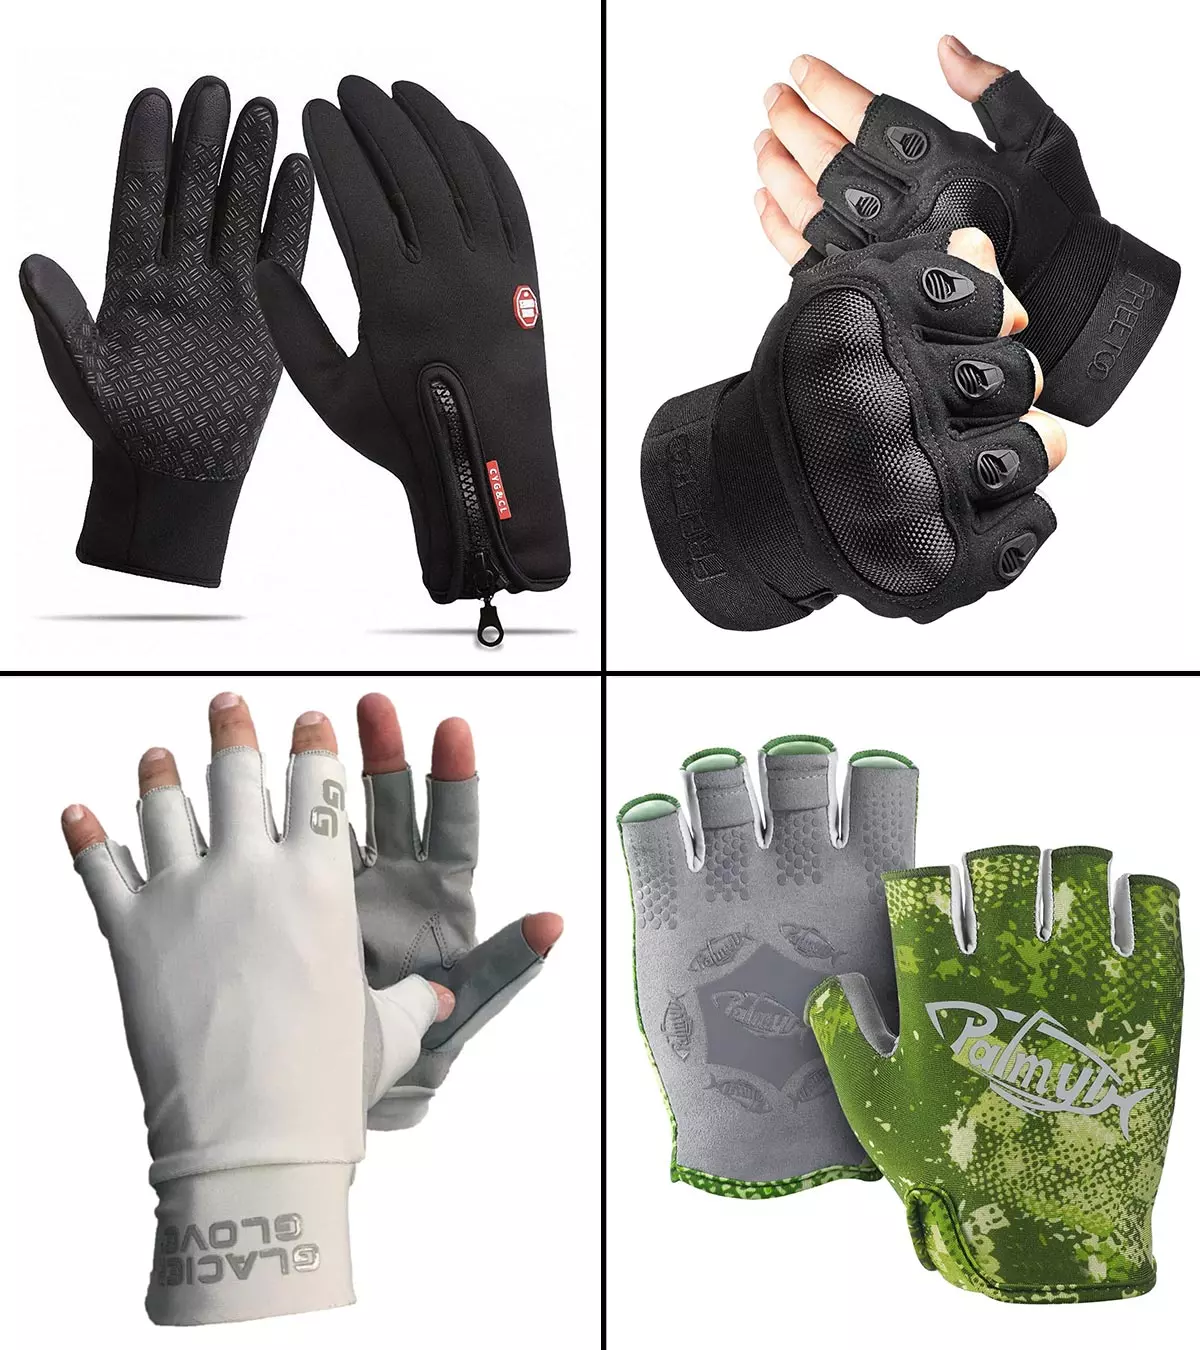 13 Best Hiking Glove